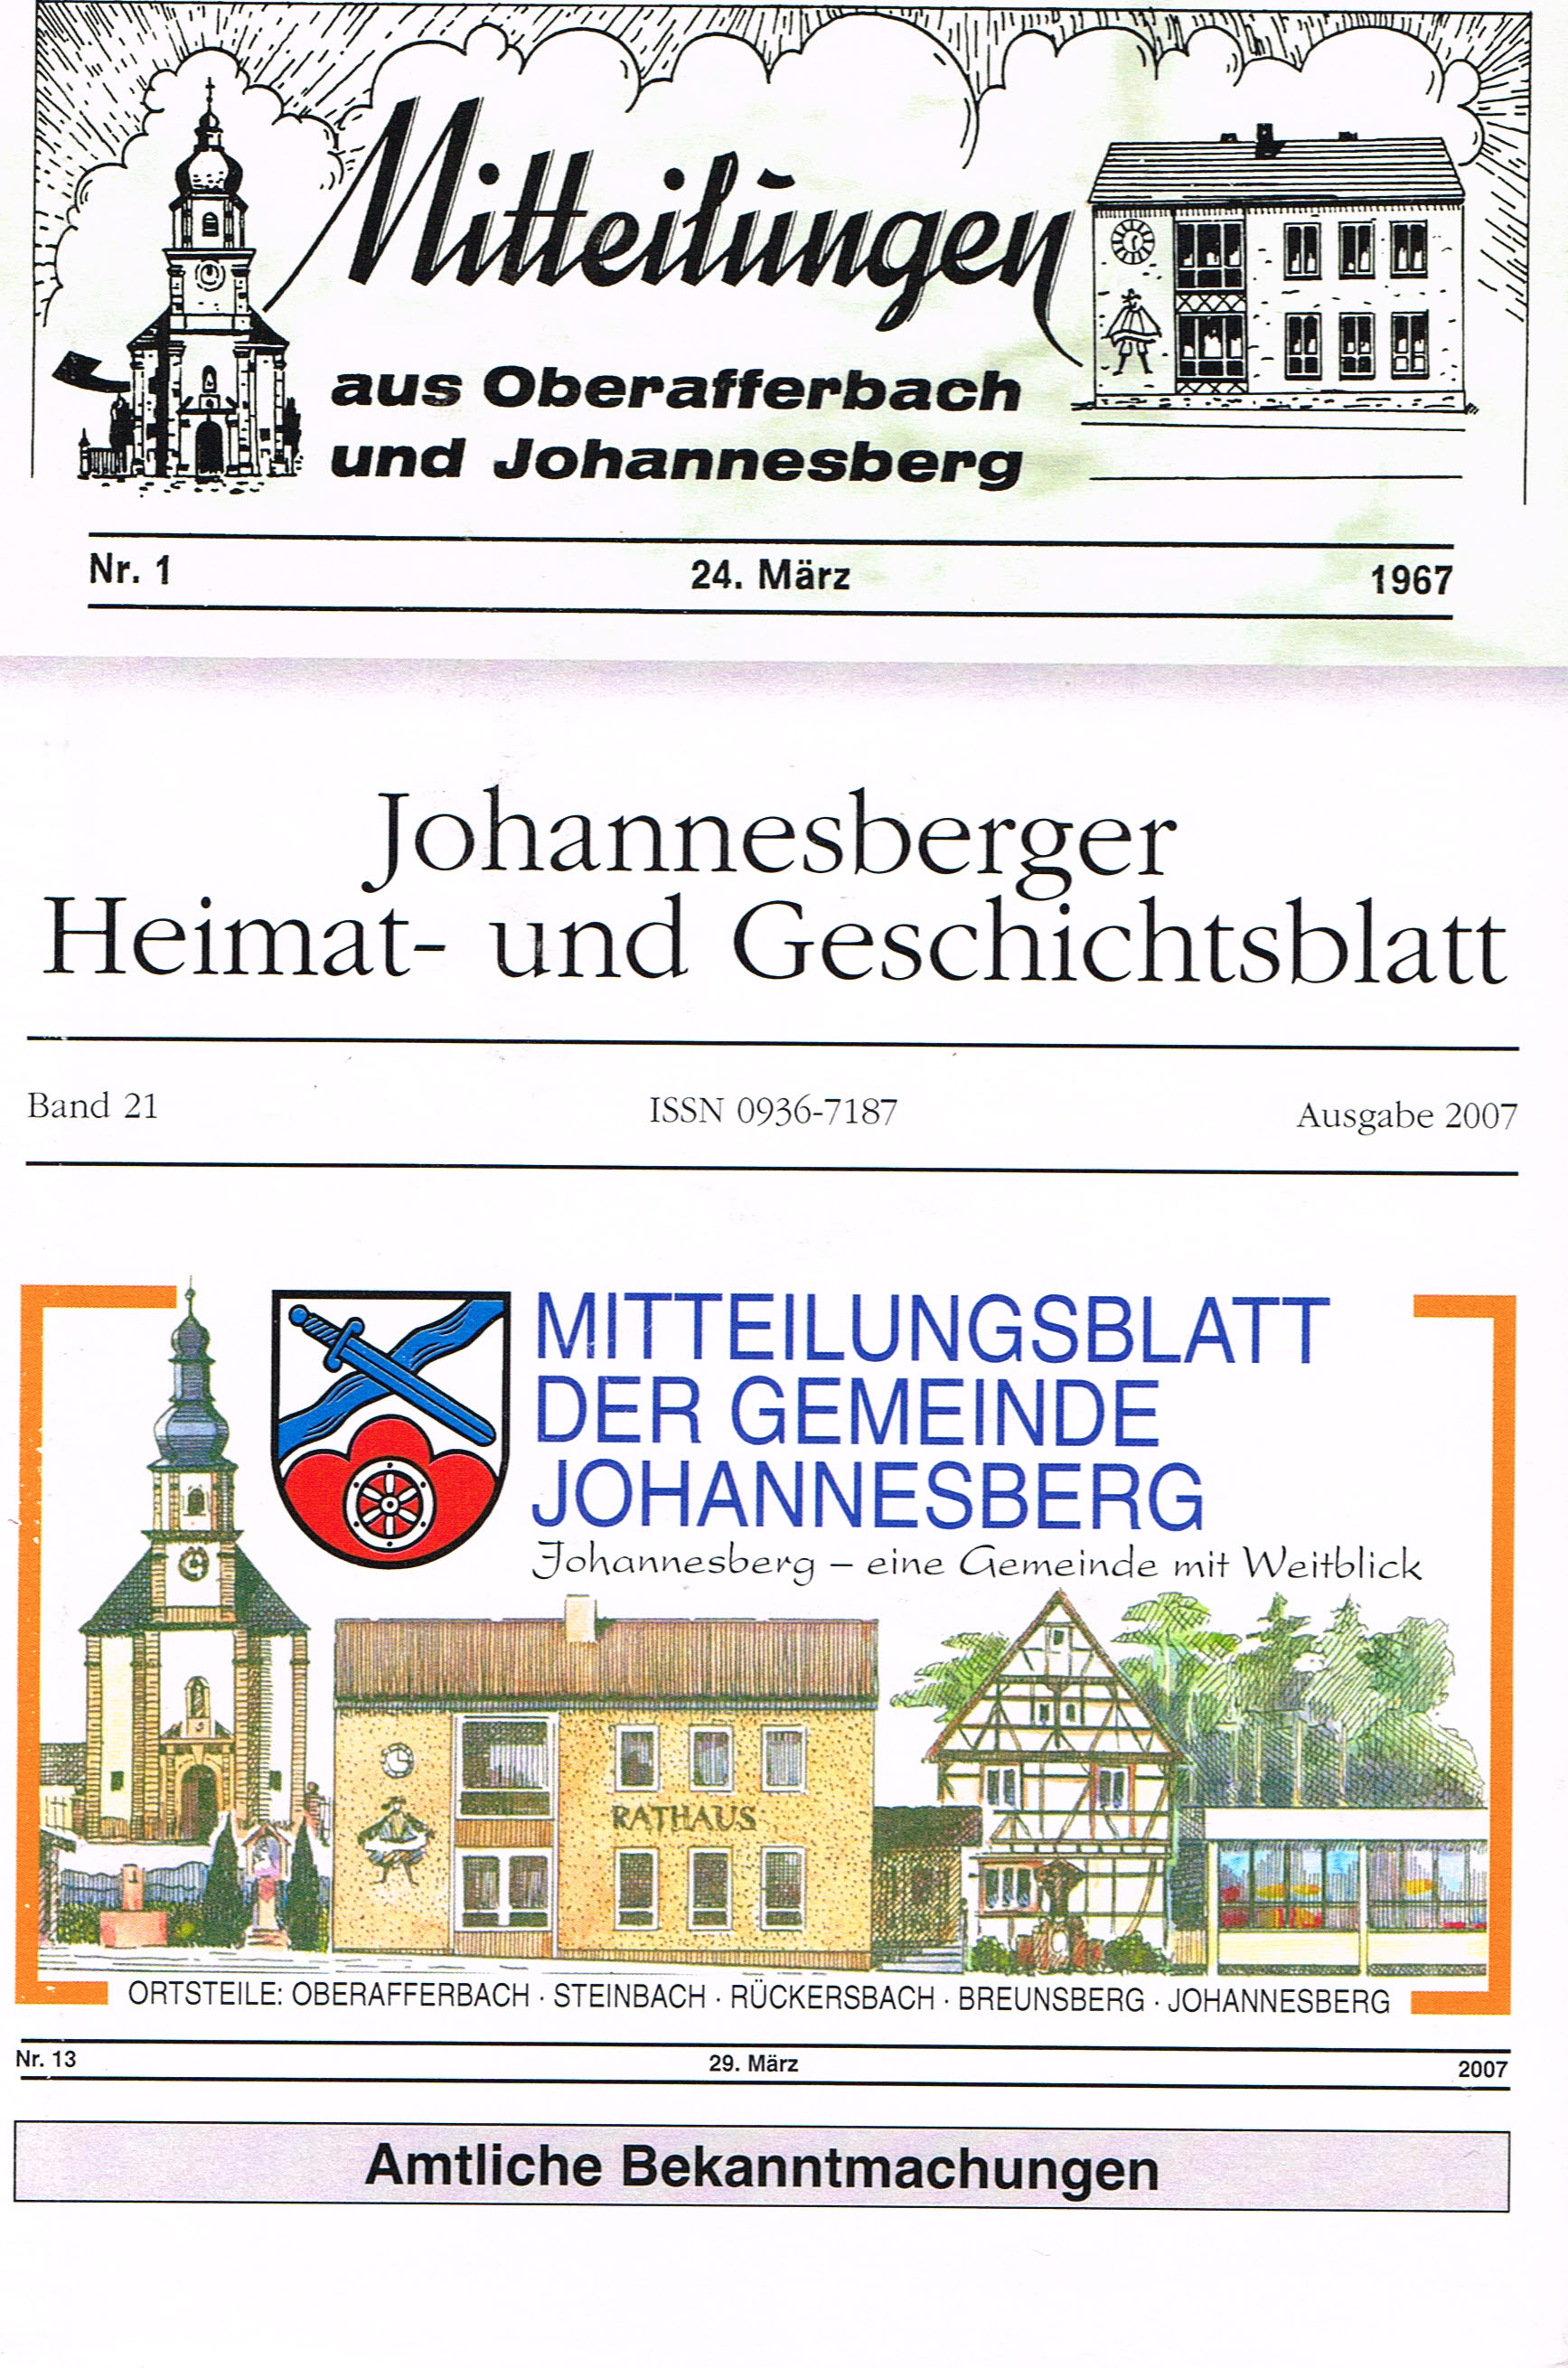 Dieses Bild zeigt das Cover des Jahrbuches 2007